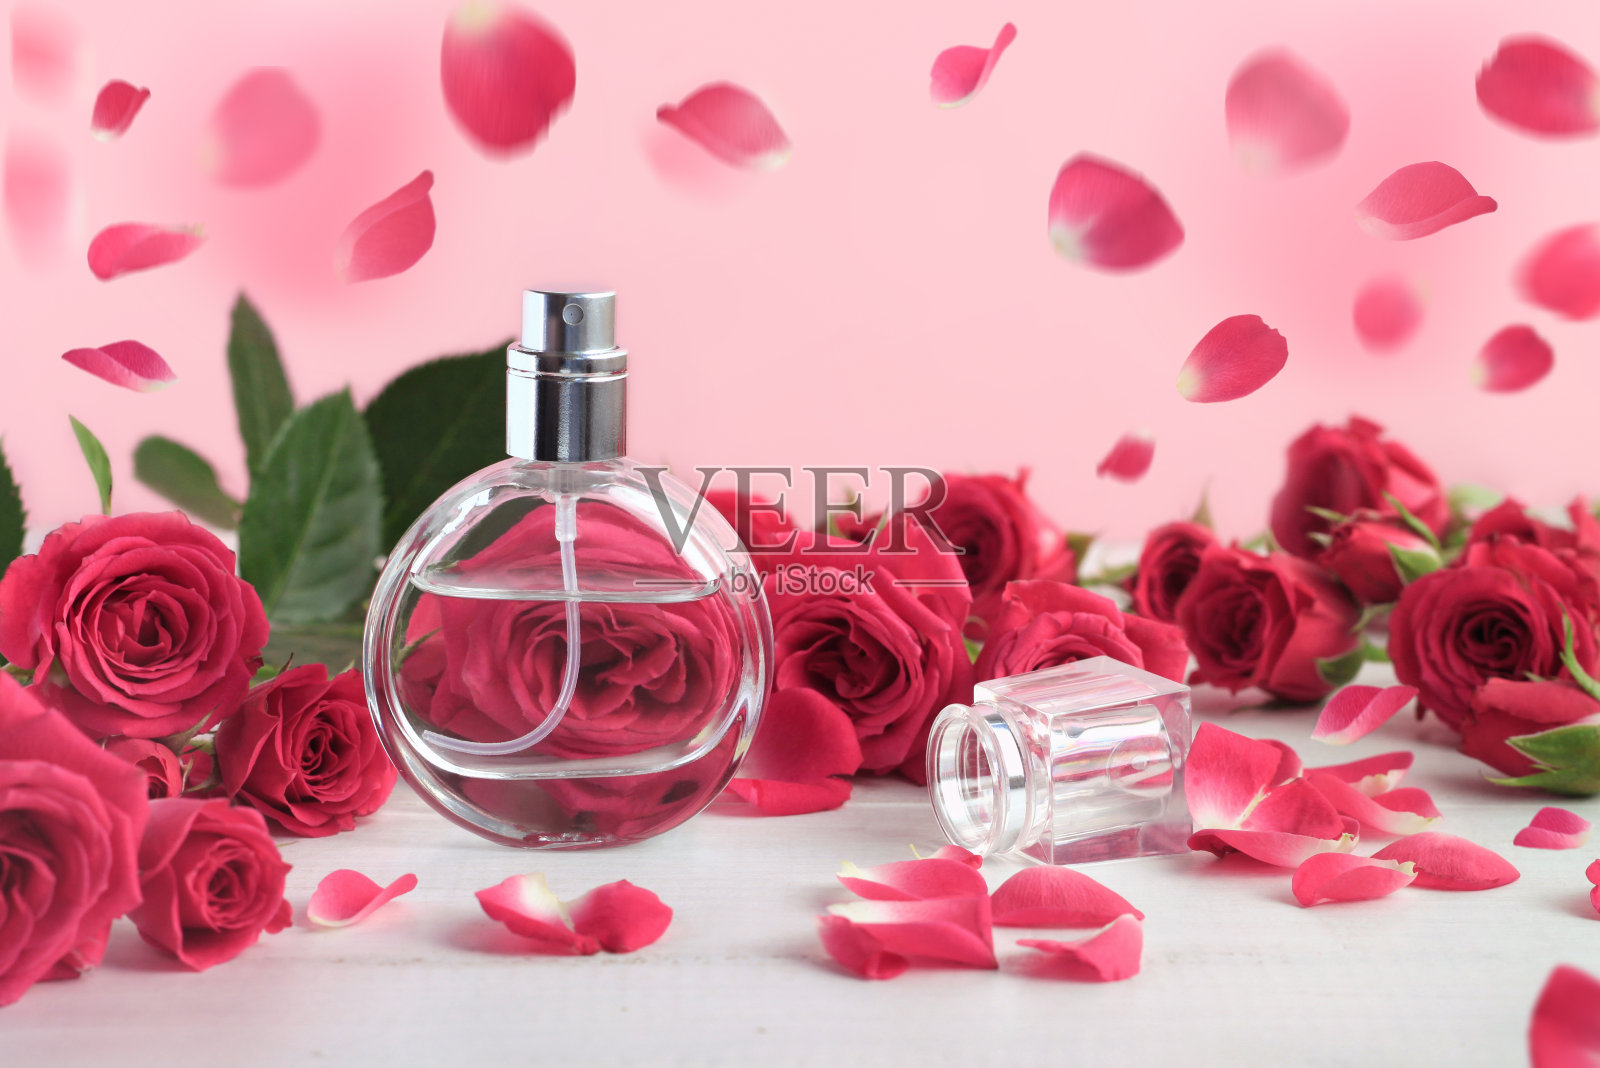 玫瑰香水瓶周围粉红色的新鲜玫瑰花蕾和飘落的花瓣。照片摄影图片